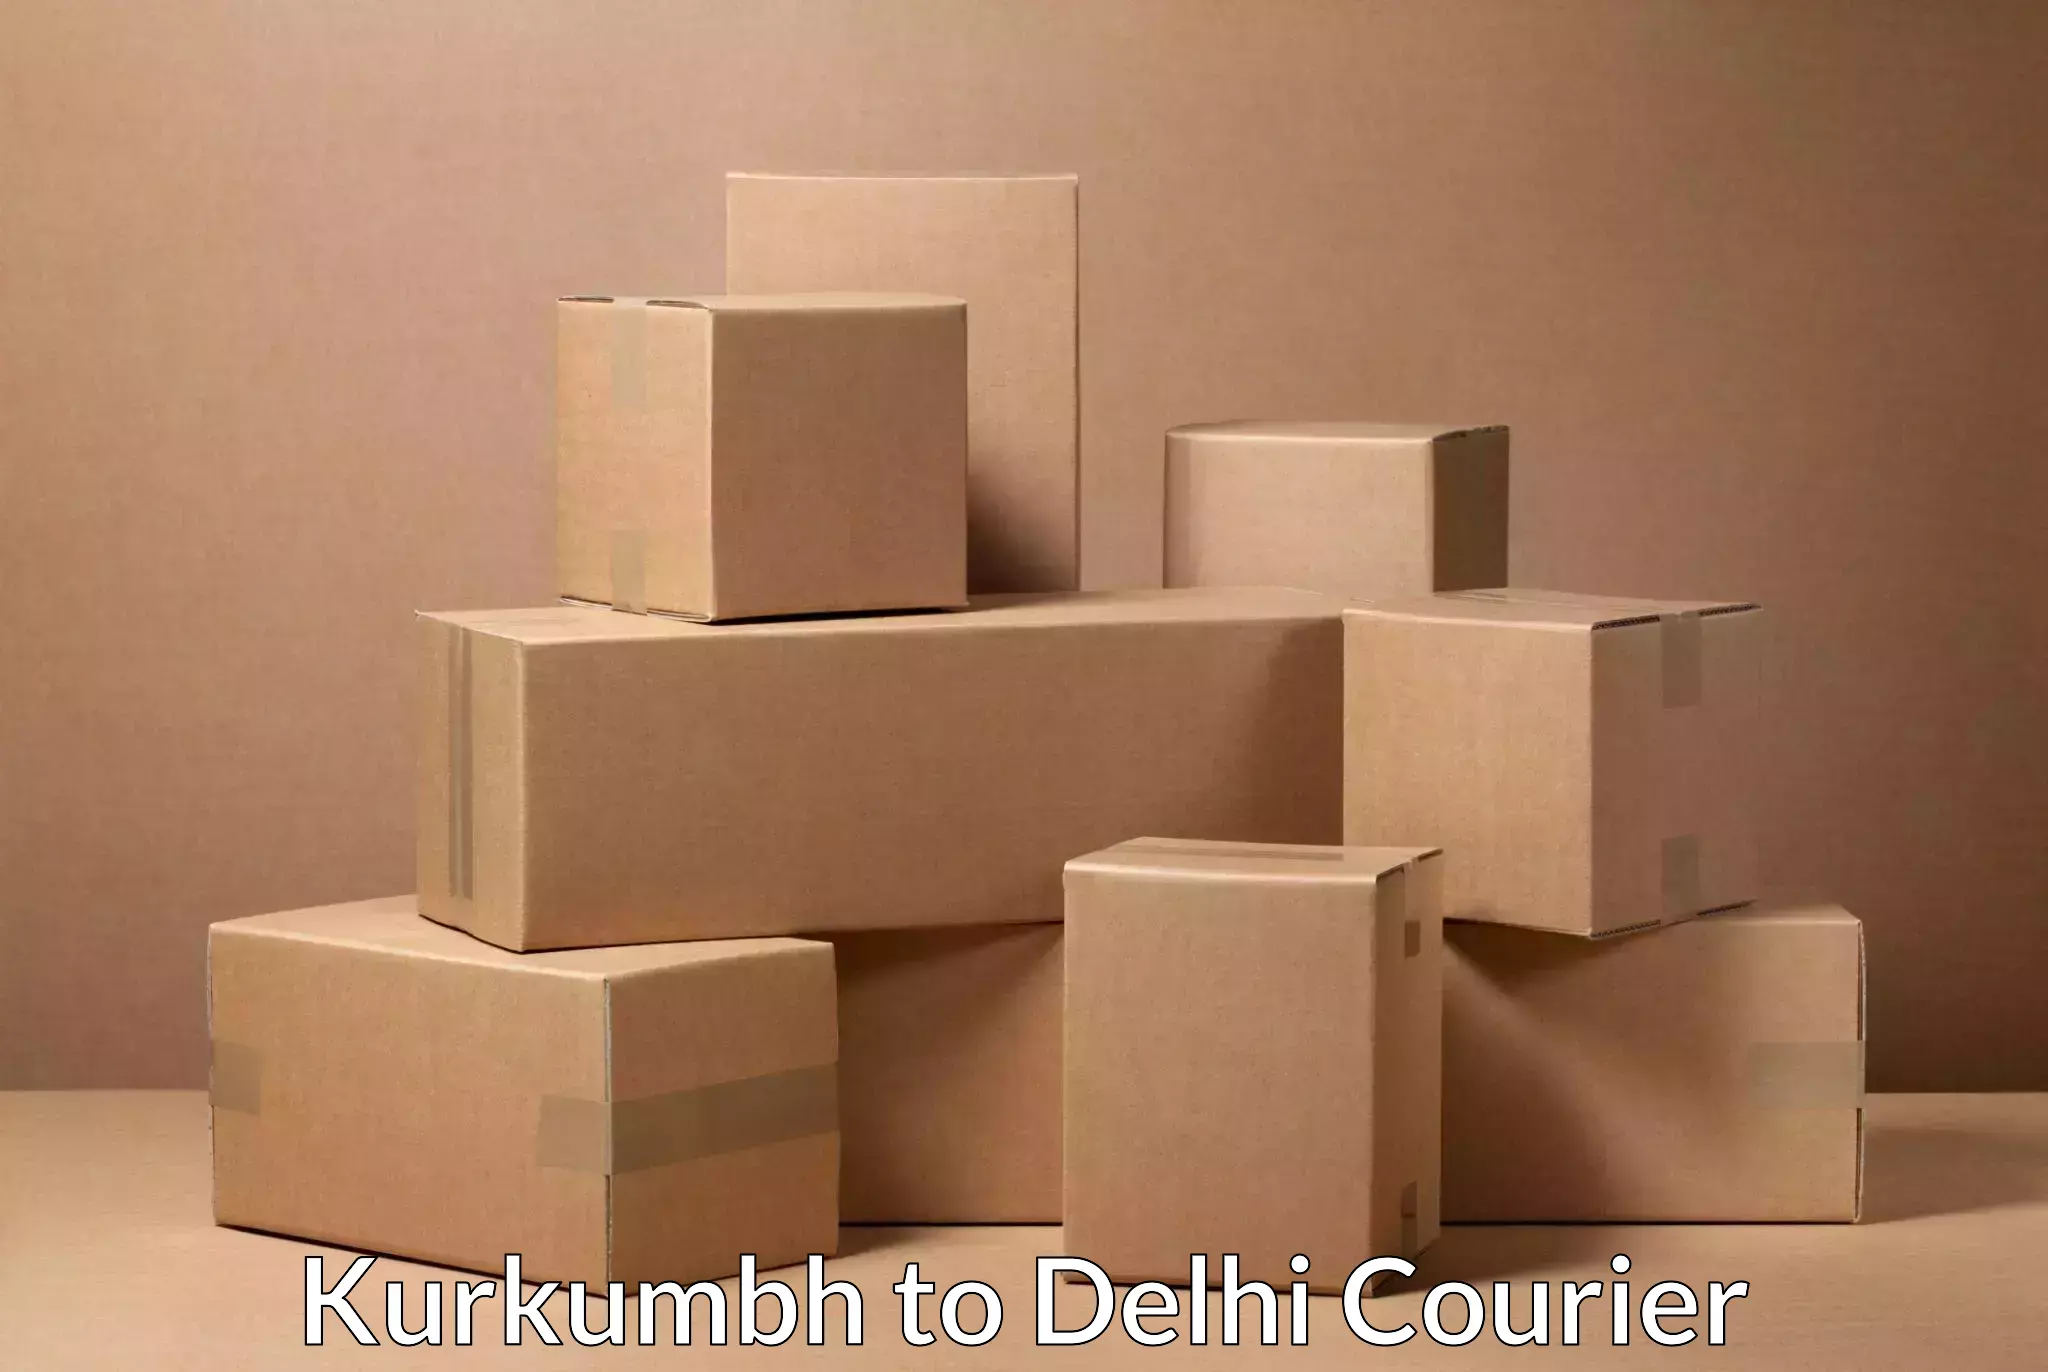 Corporate courier solutions Kurkumbh to Delhi